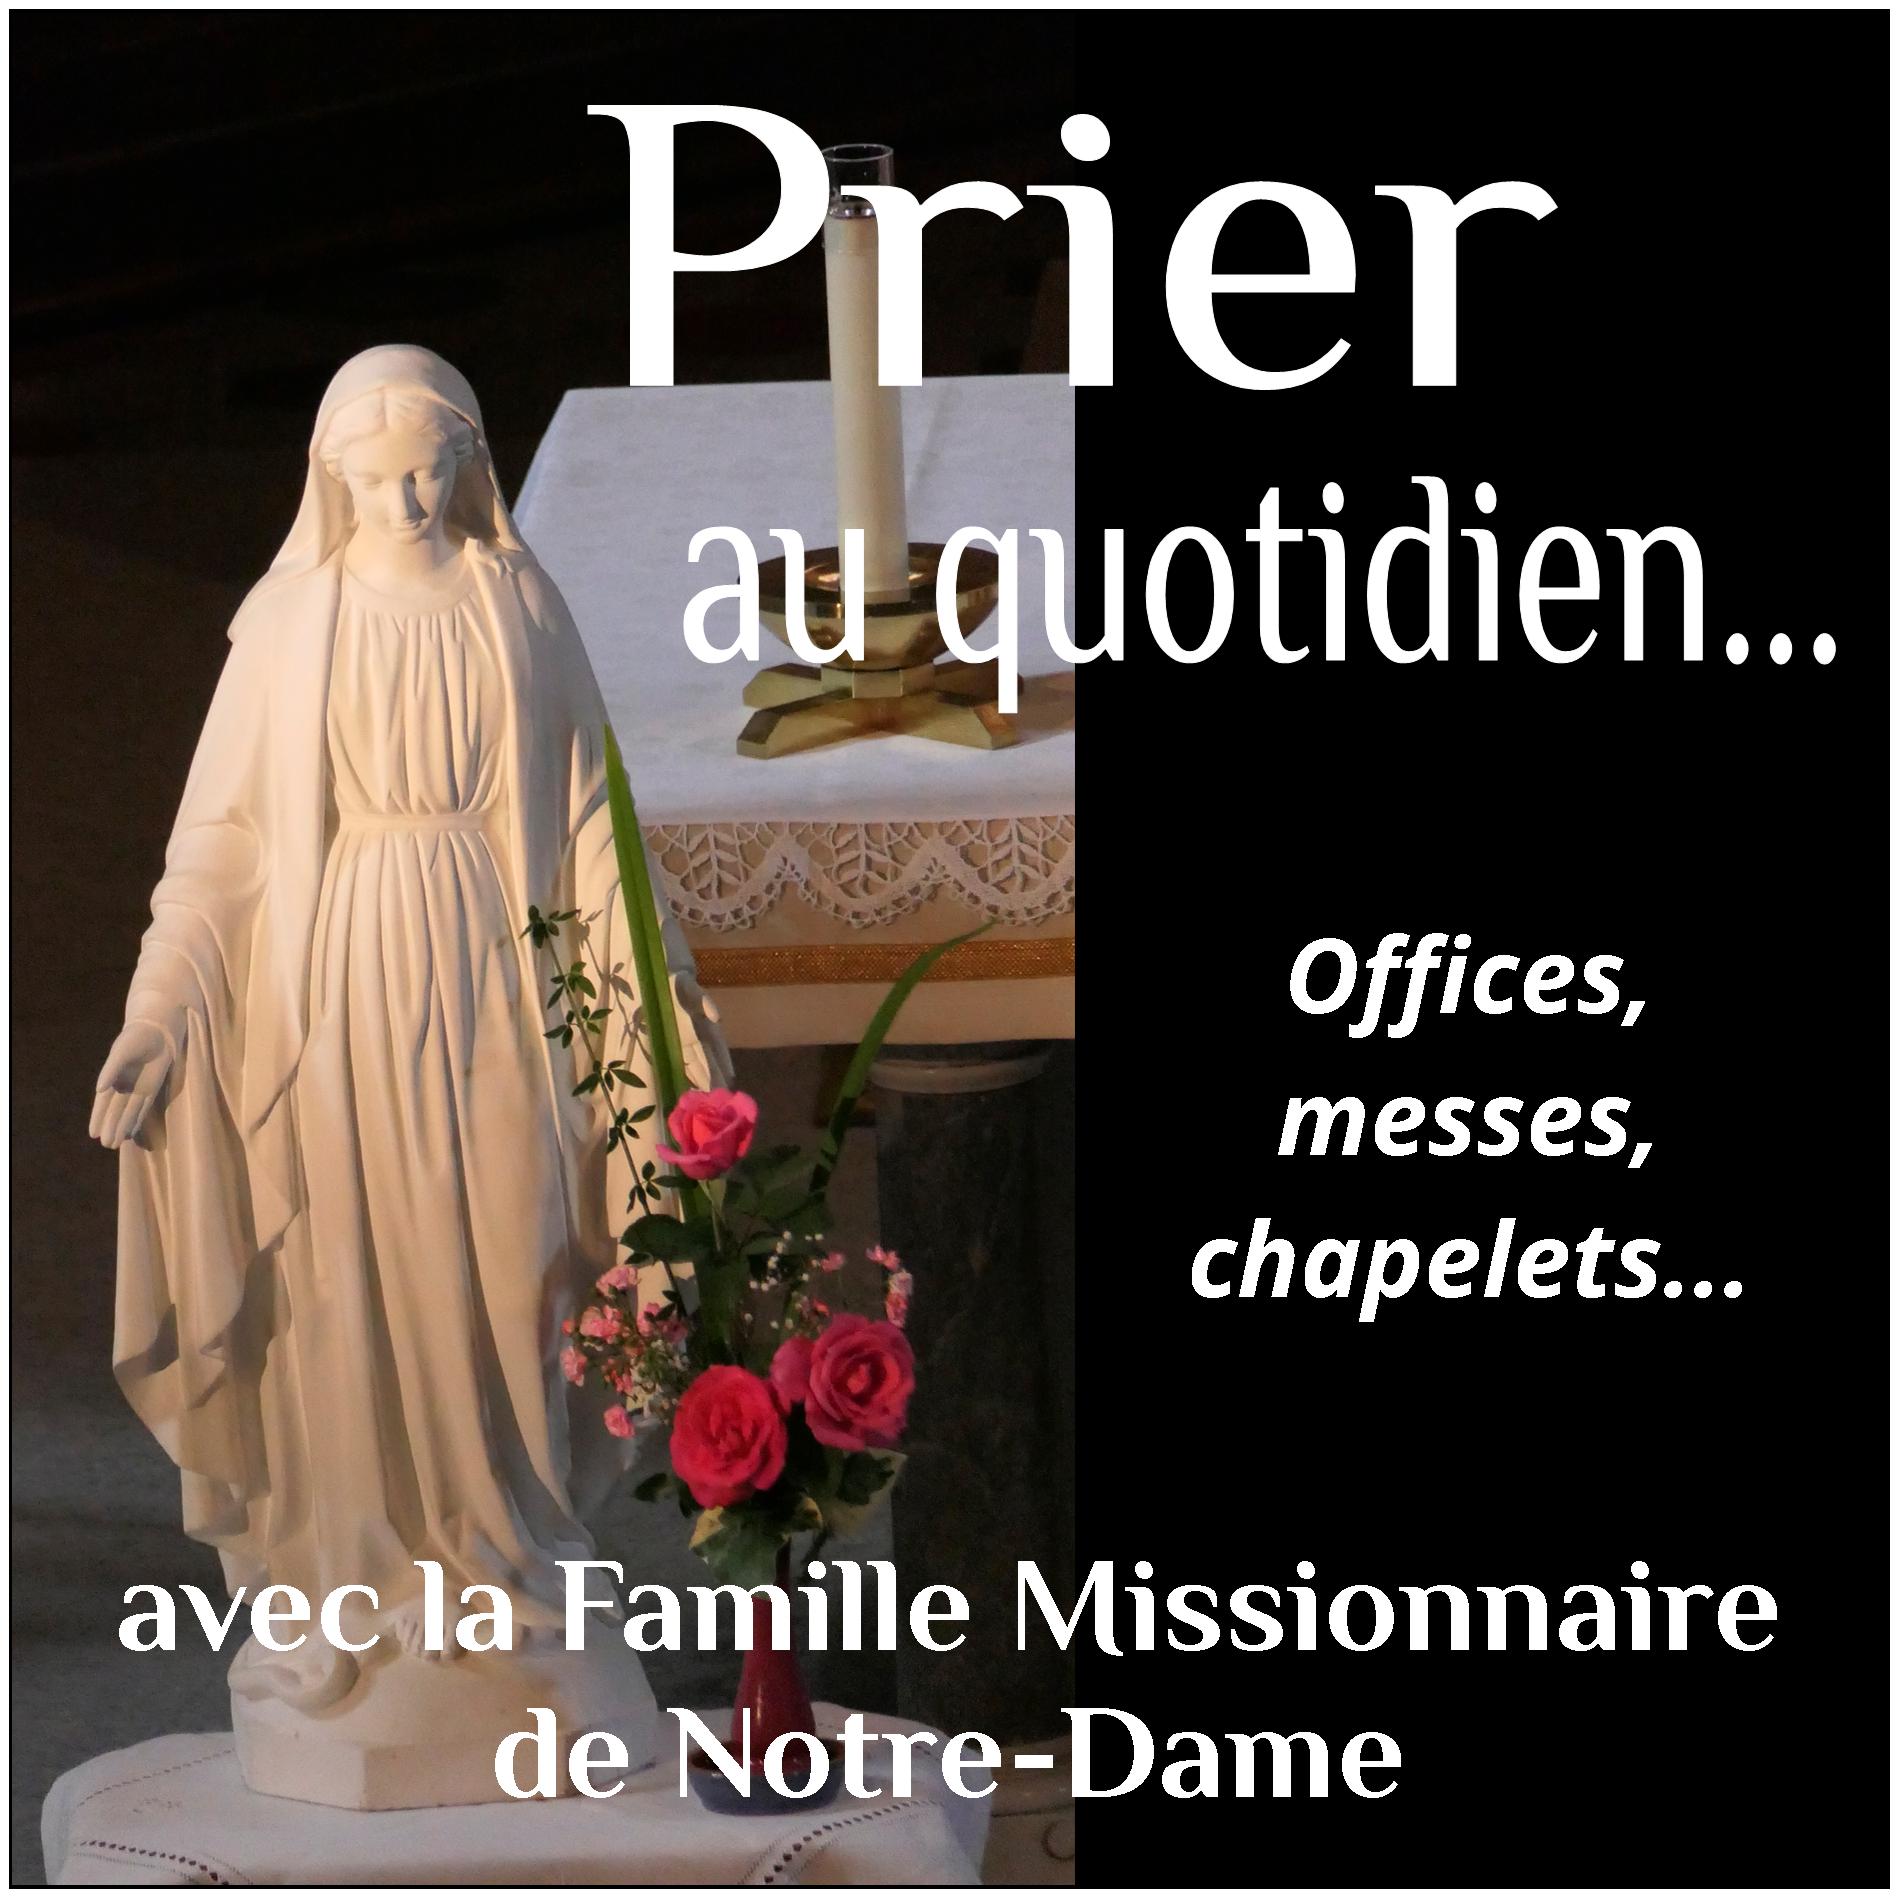 Prier avec la Famille Missionnaire de Notre-Dame - Podcast Domini